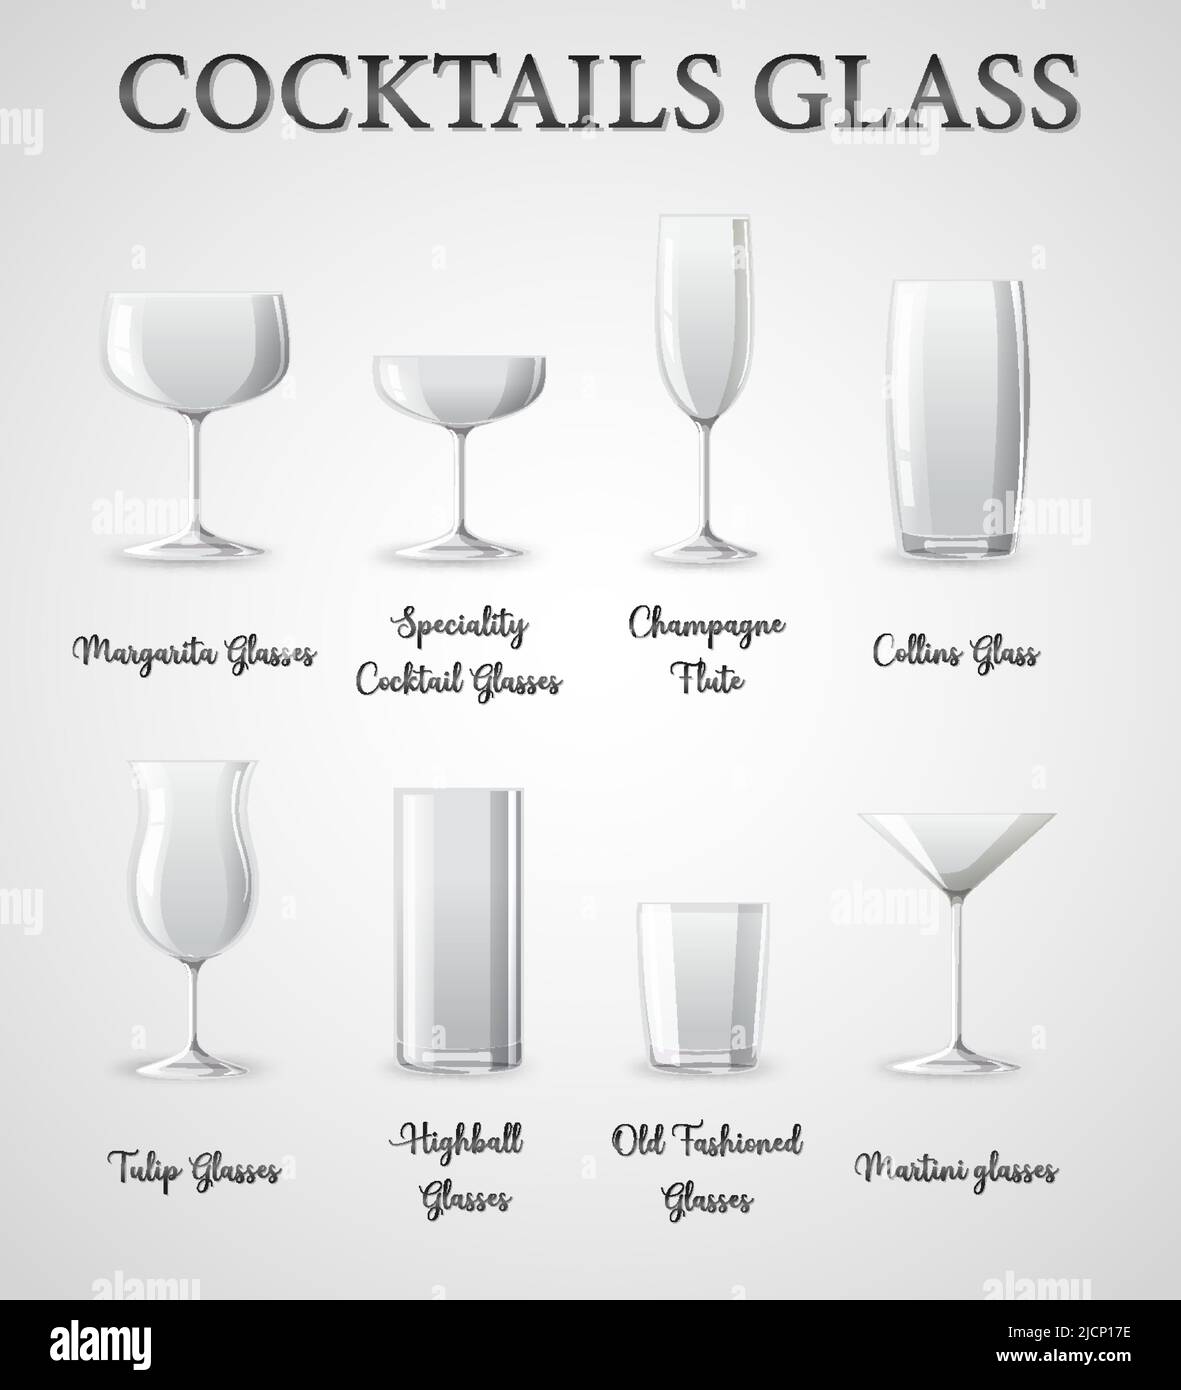 Illustration des types de verres à cocktail Image Vectorielle Stock - Alamy